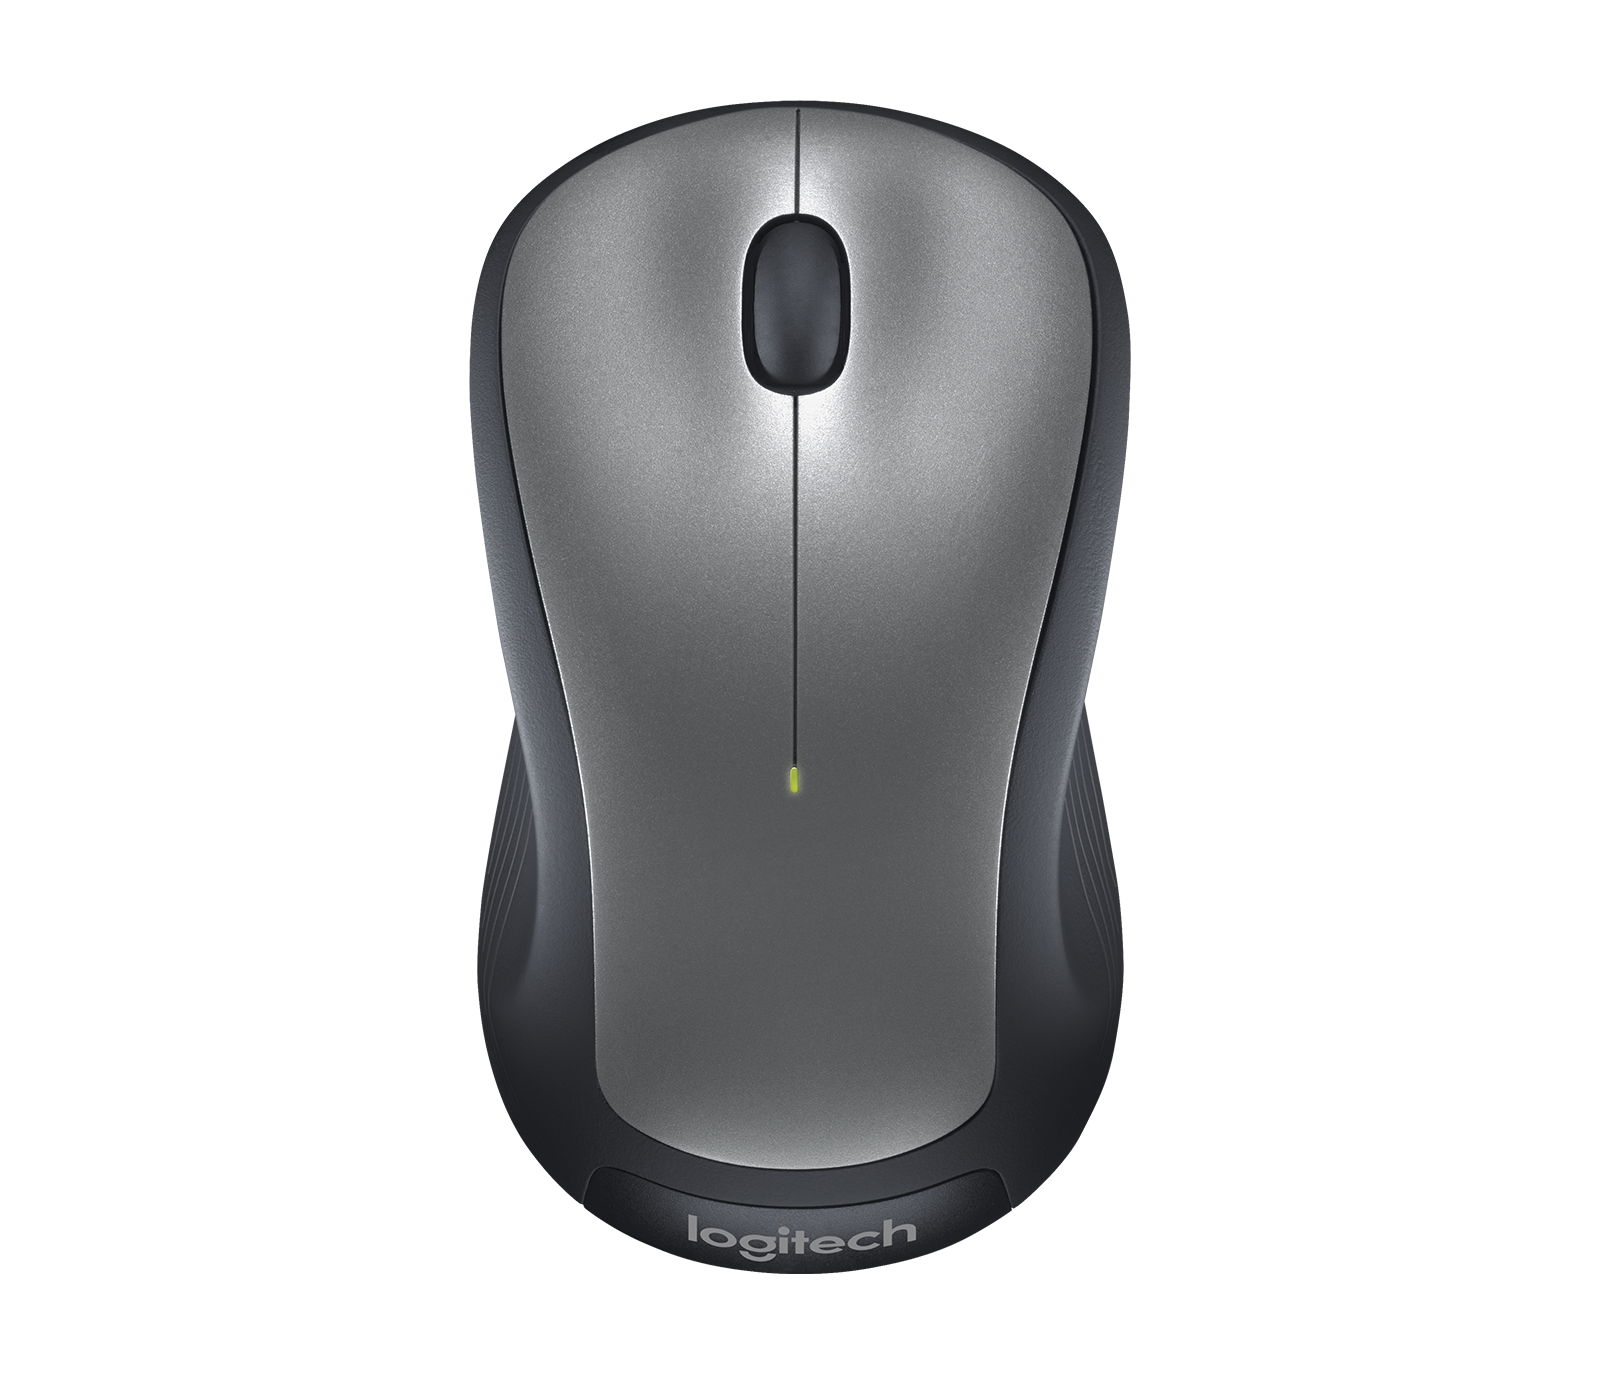 glimt via ejendom Logitech M310 Wireless Mouse with Ambidextrous Design